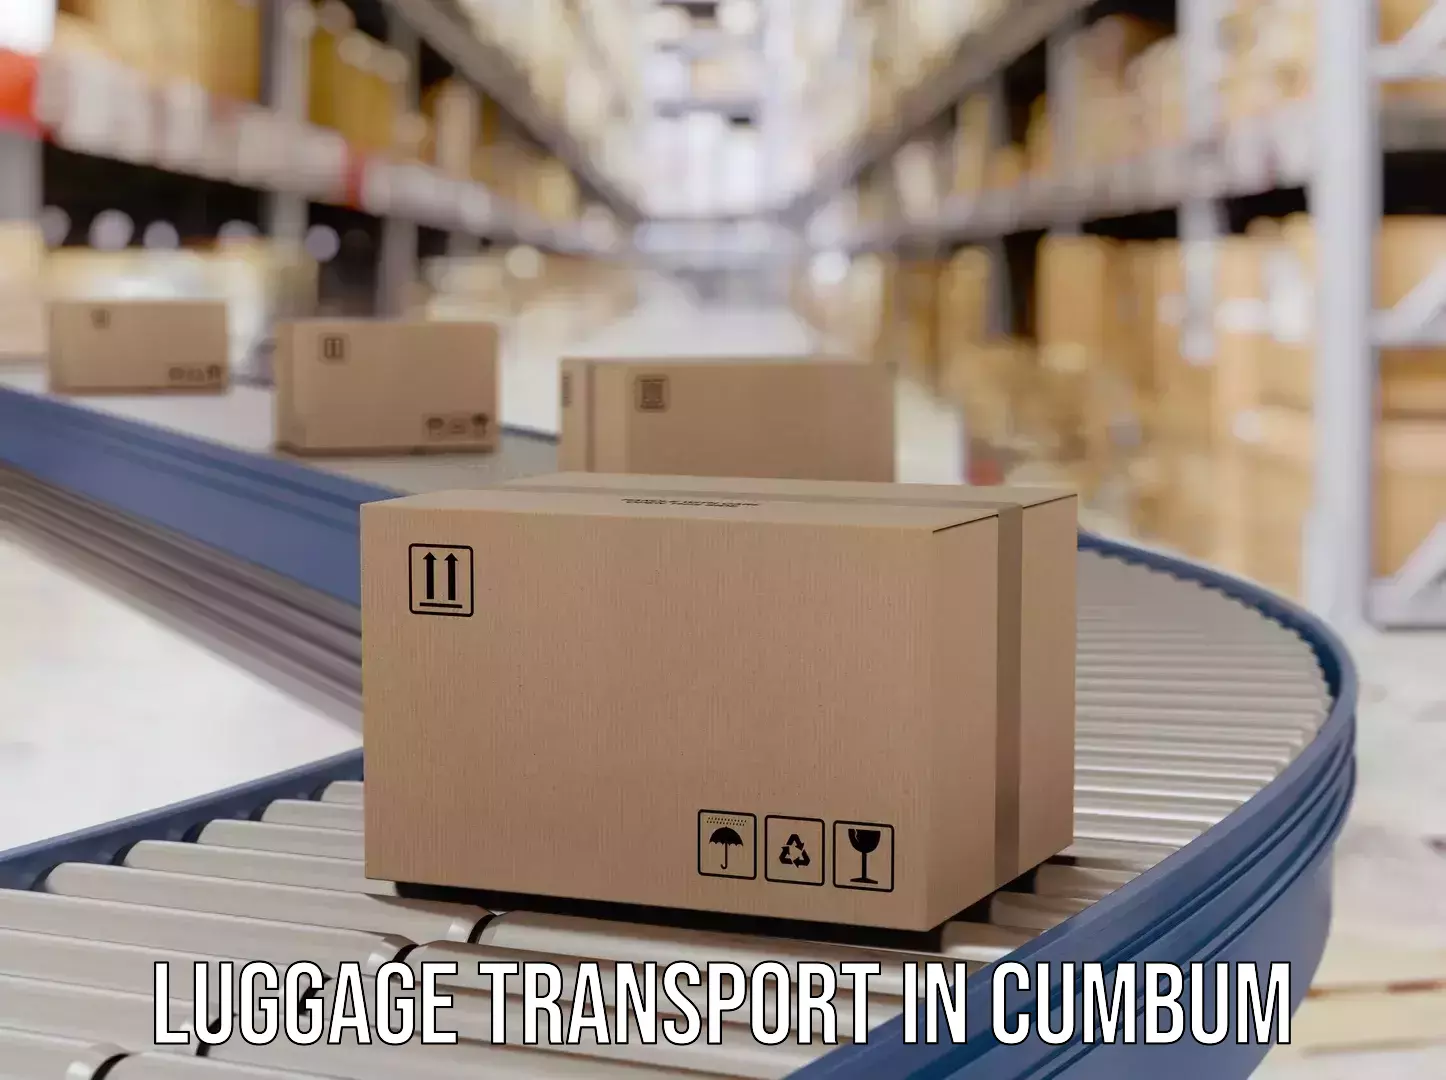 Luggage transport guidelines in Cumbum